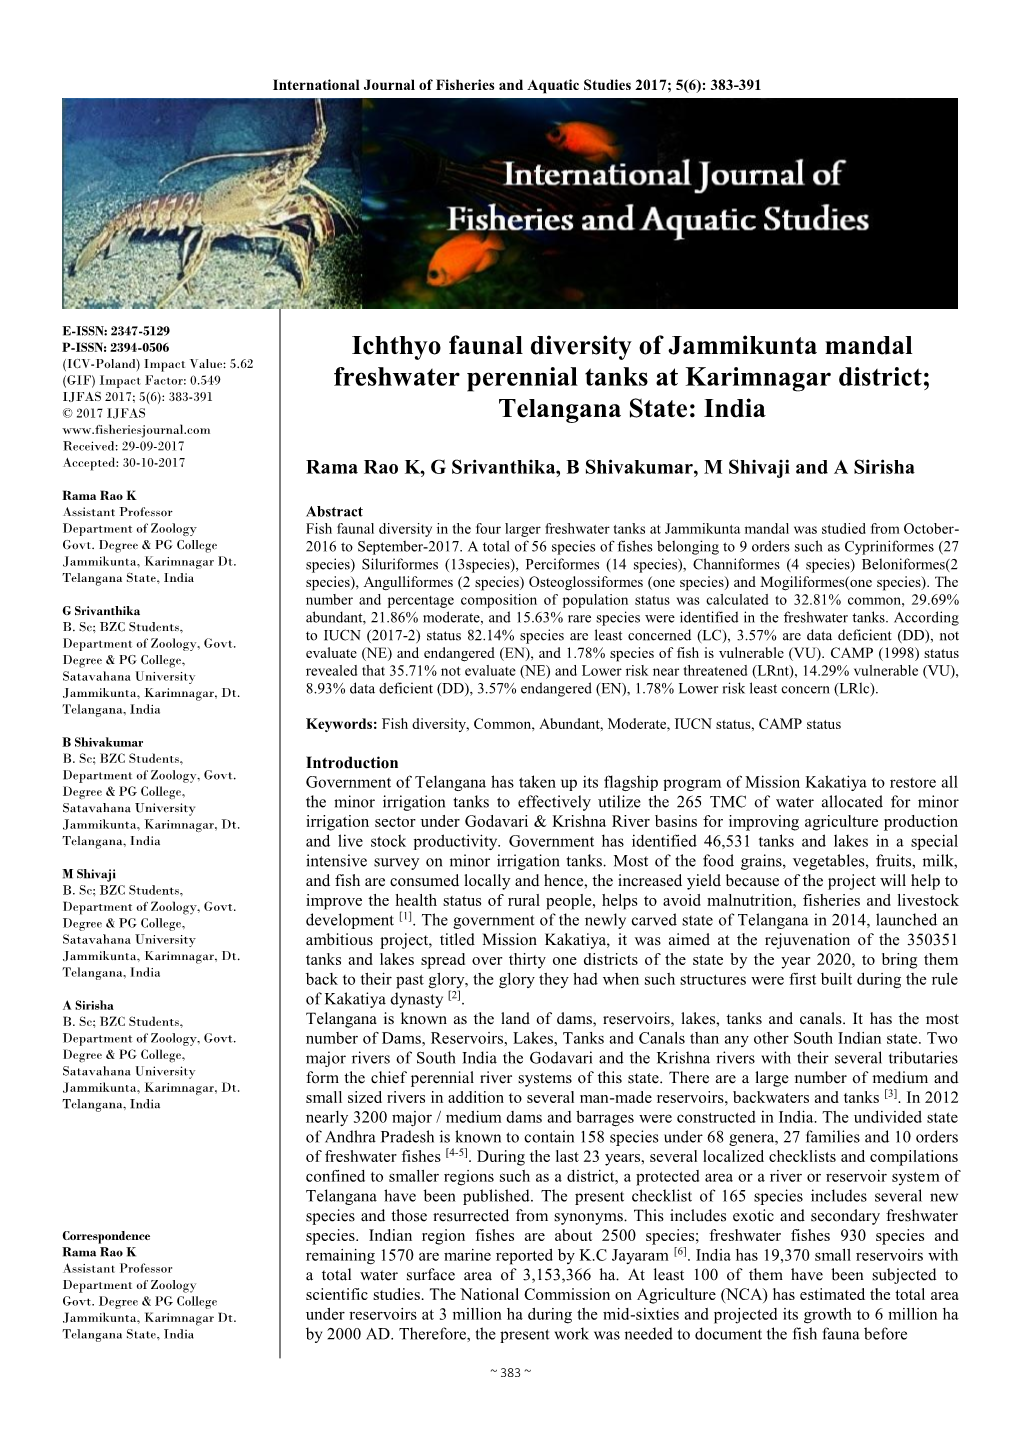 Ichthyo Faunal Diversity of Jammikunta Mandal Freshwater Perennial Tanks